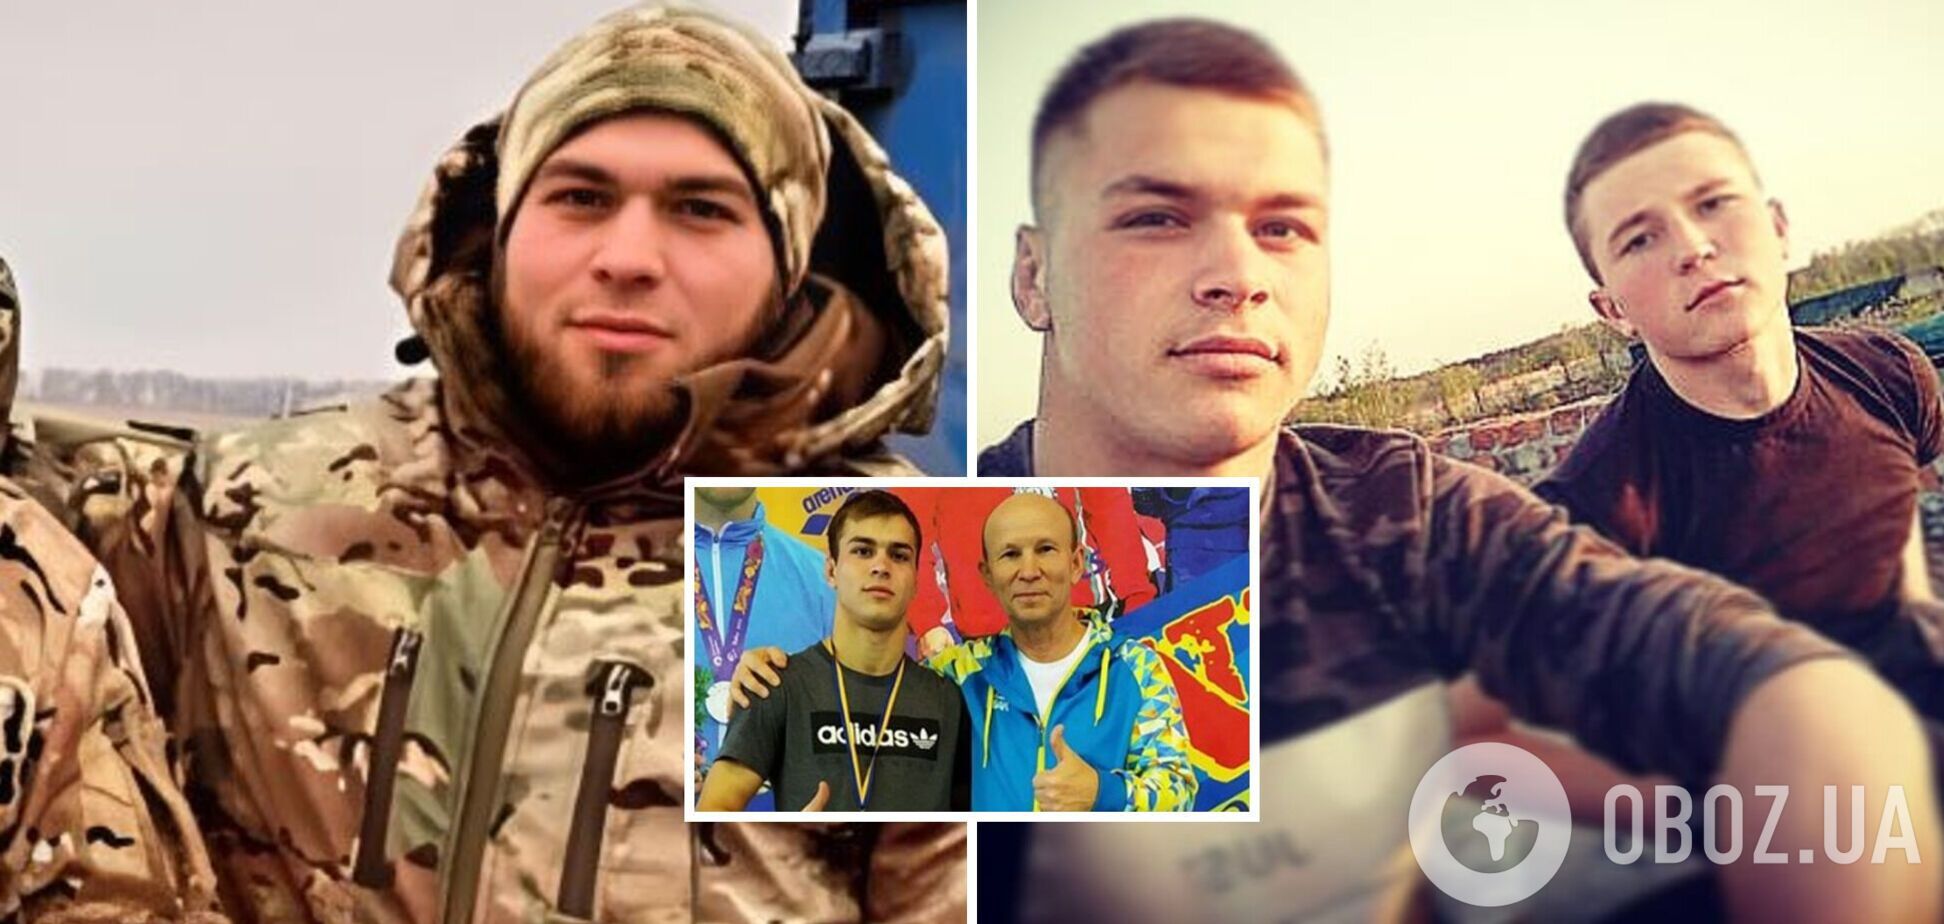 'Не прятался за чужие спины': украинский борец погиб в боях под Бахмутом